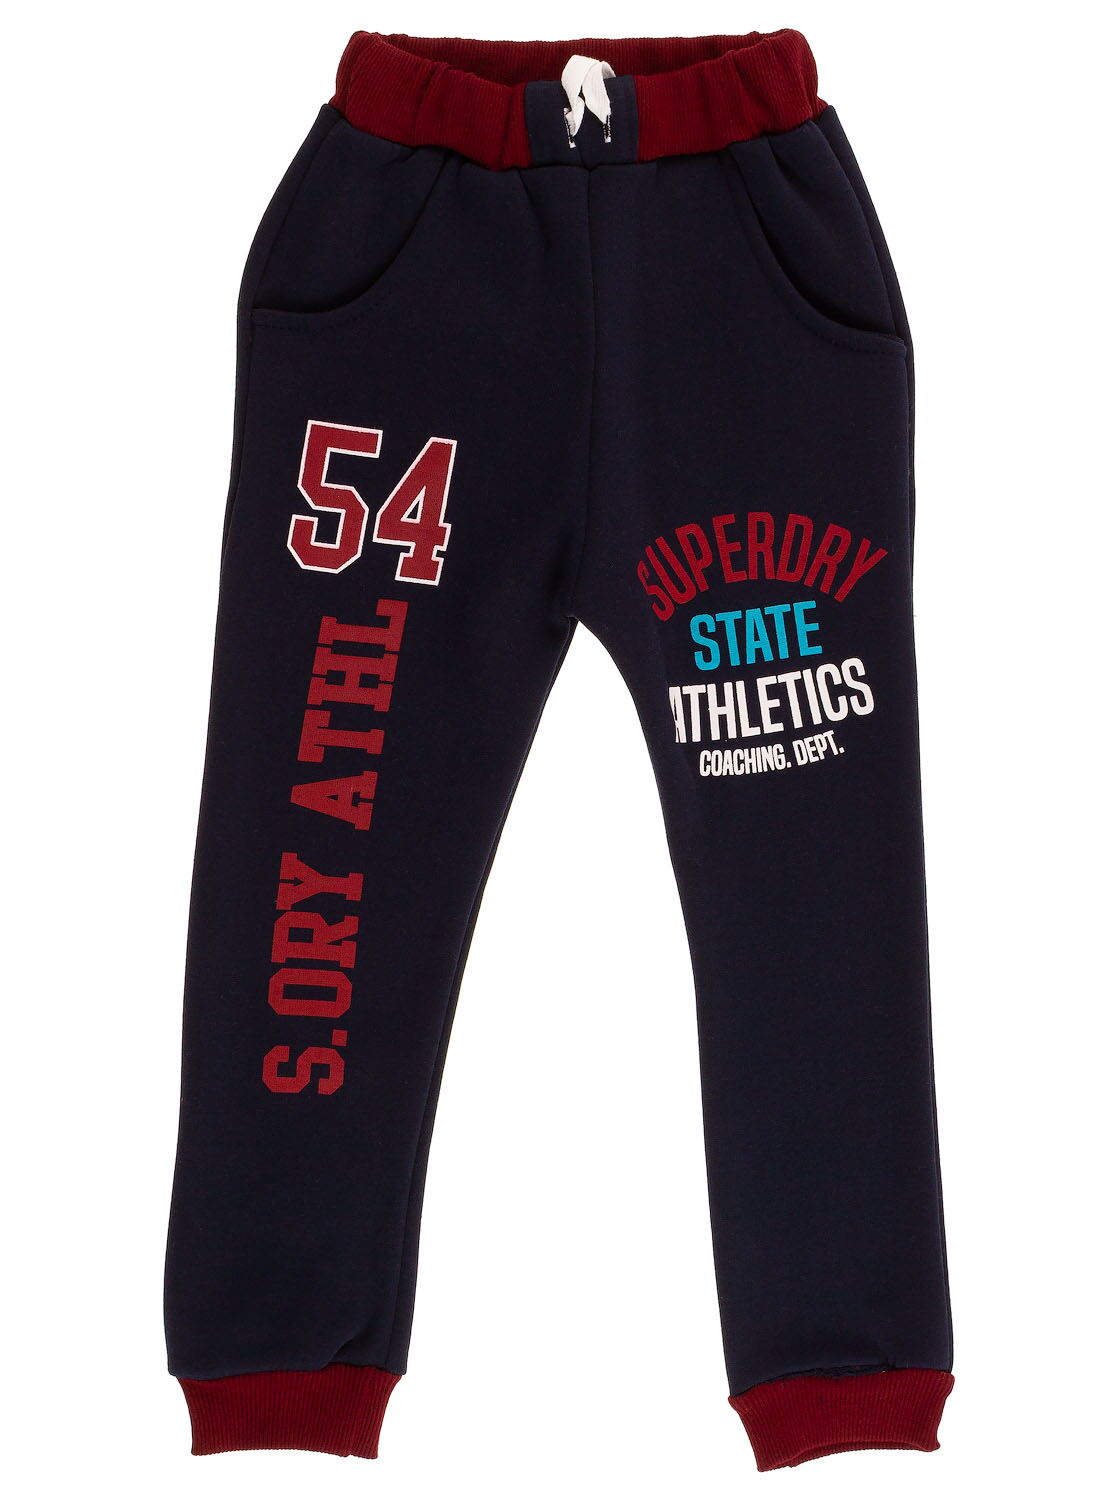 Утепленные спортивные штаны для мальчика 54 темно-синие - цена